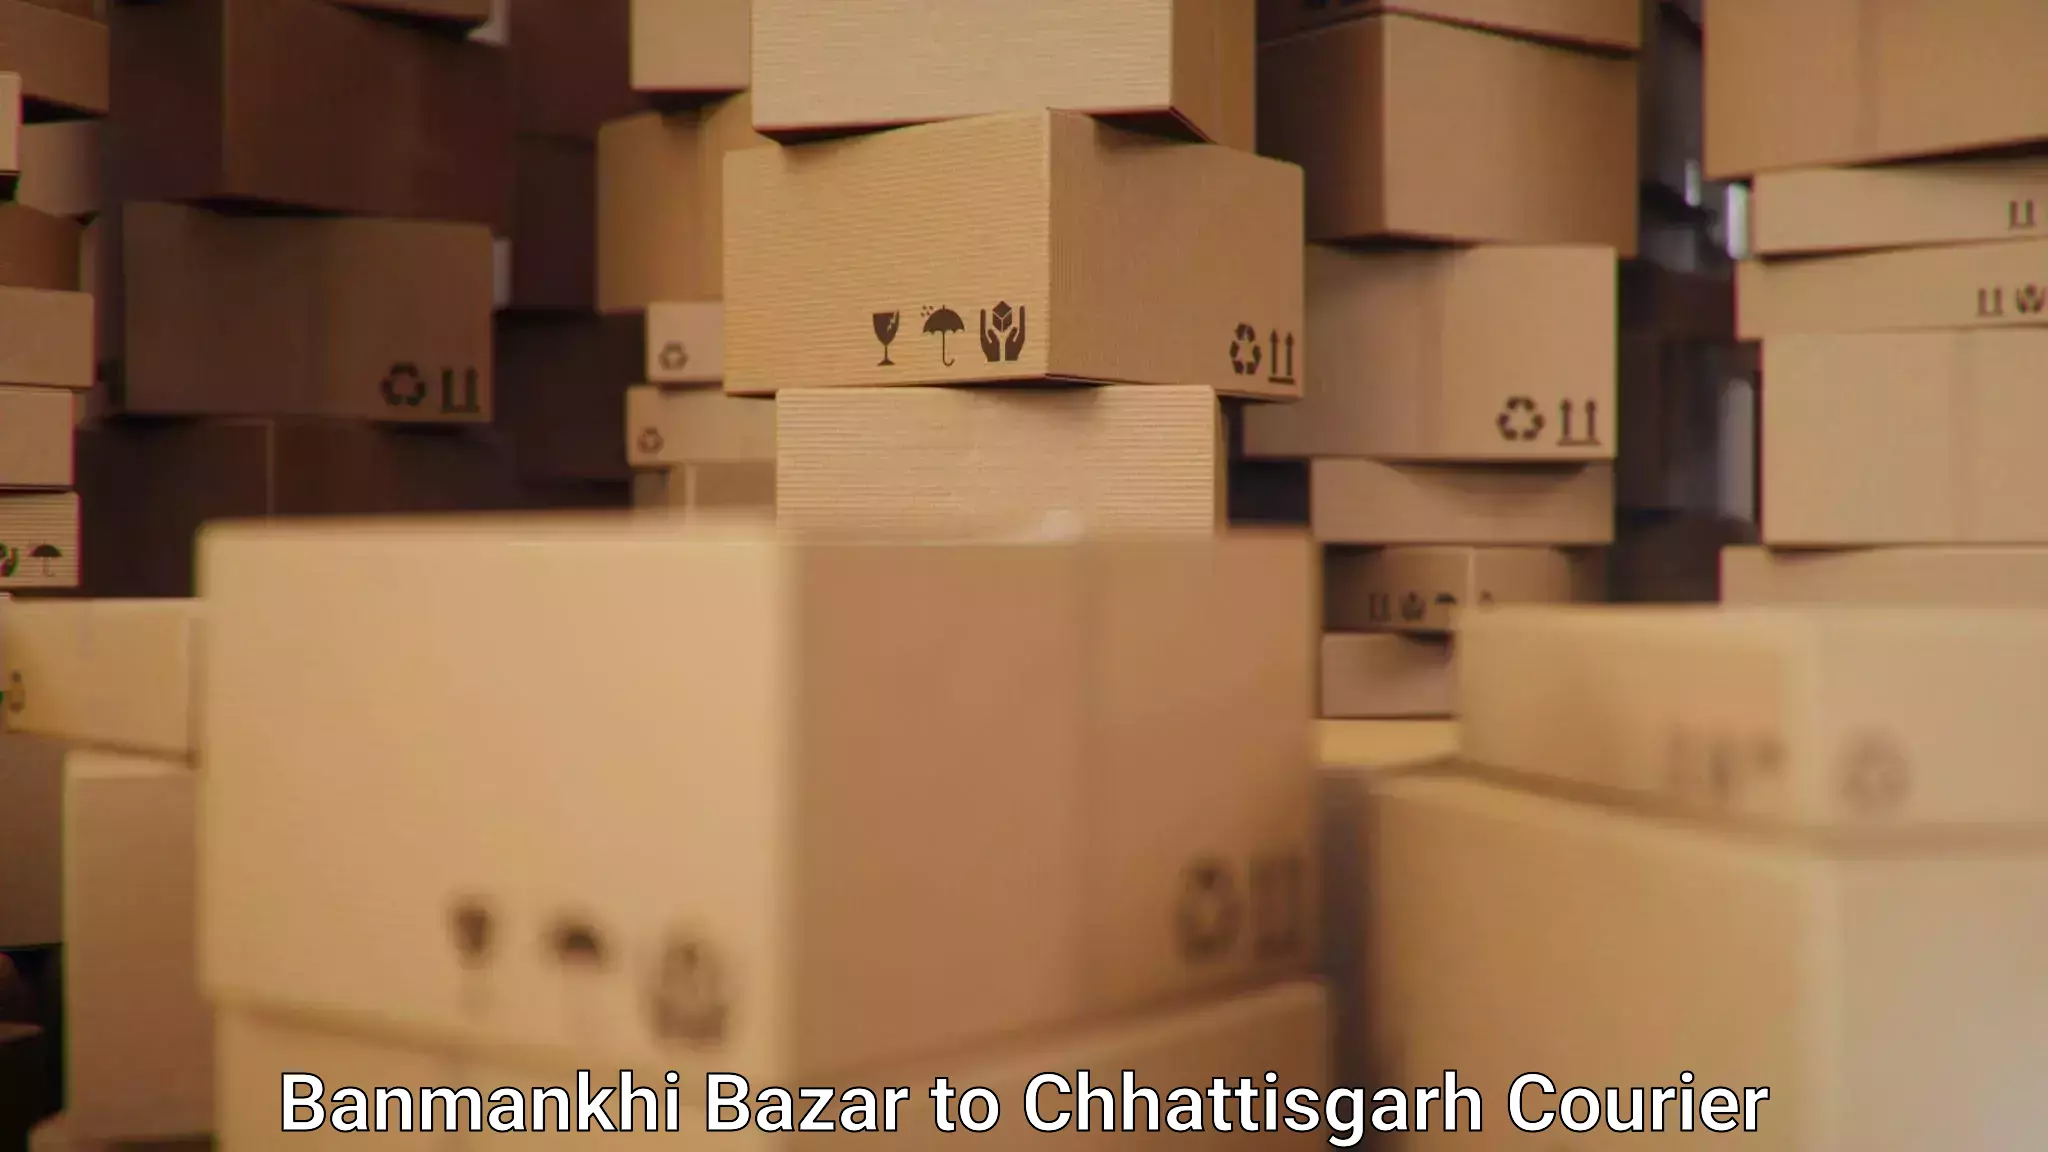 Courier service comparison Banmankhi Bazar to Premnagar